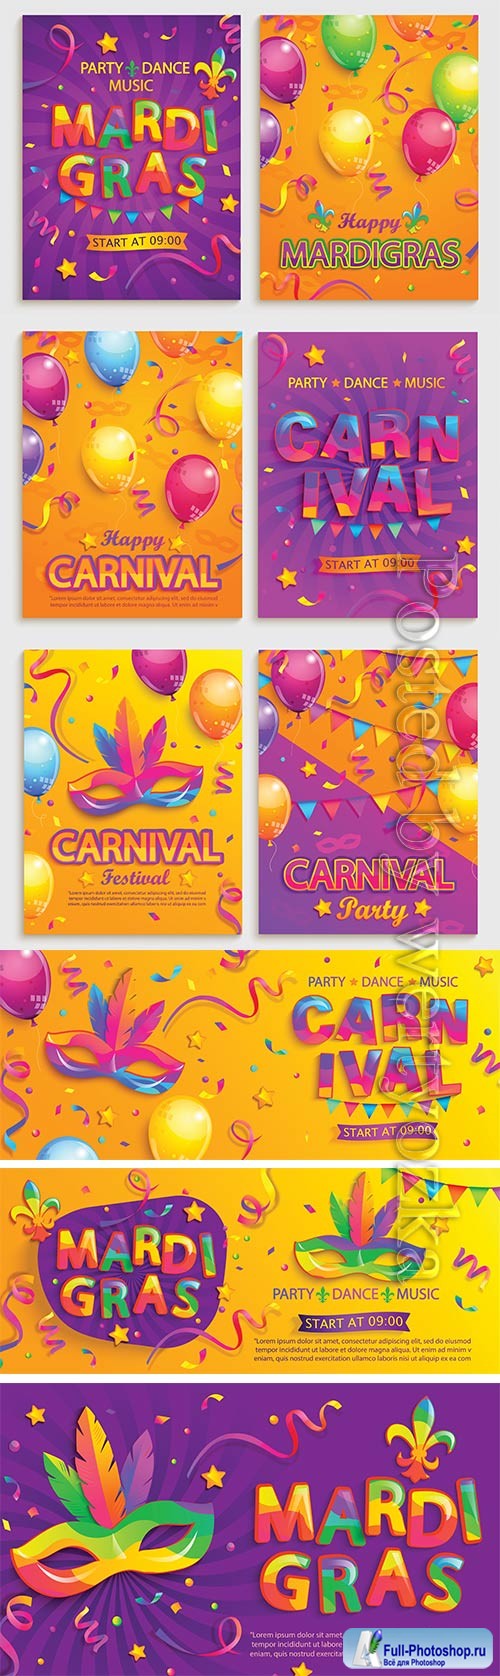 Mardi gras carnival poster, Venice carnival vector design # 3